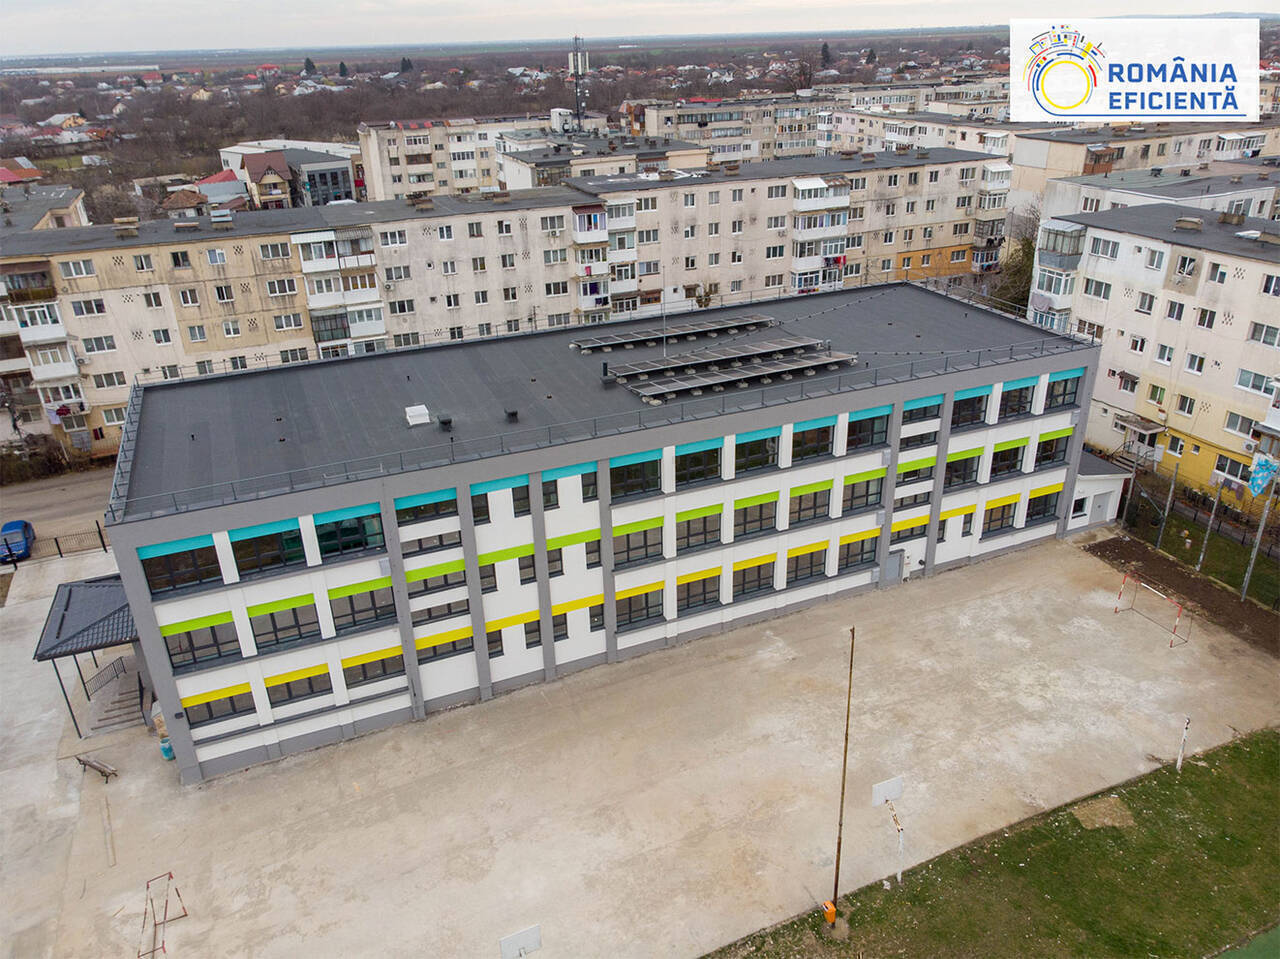 Școala Gimnazială Liliești Băicoi, Prahova, renovată nZEB prin programul România Eficientă - sursa foto: www.romania-eficienta.ro